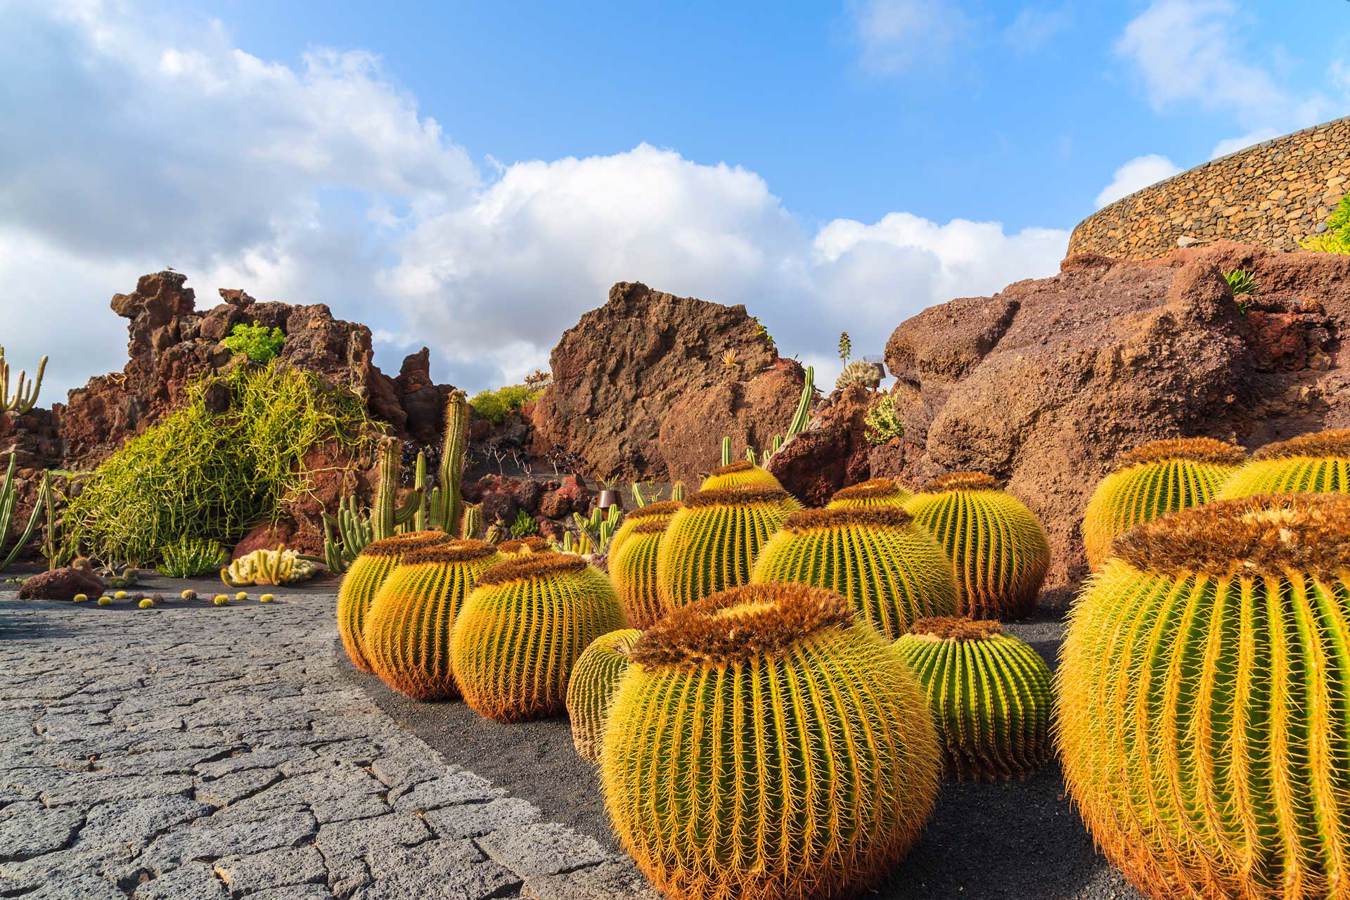 Lanzarote. The cactus garden.